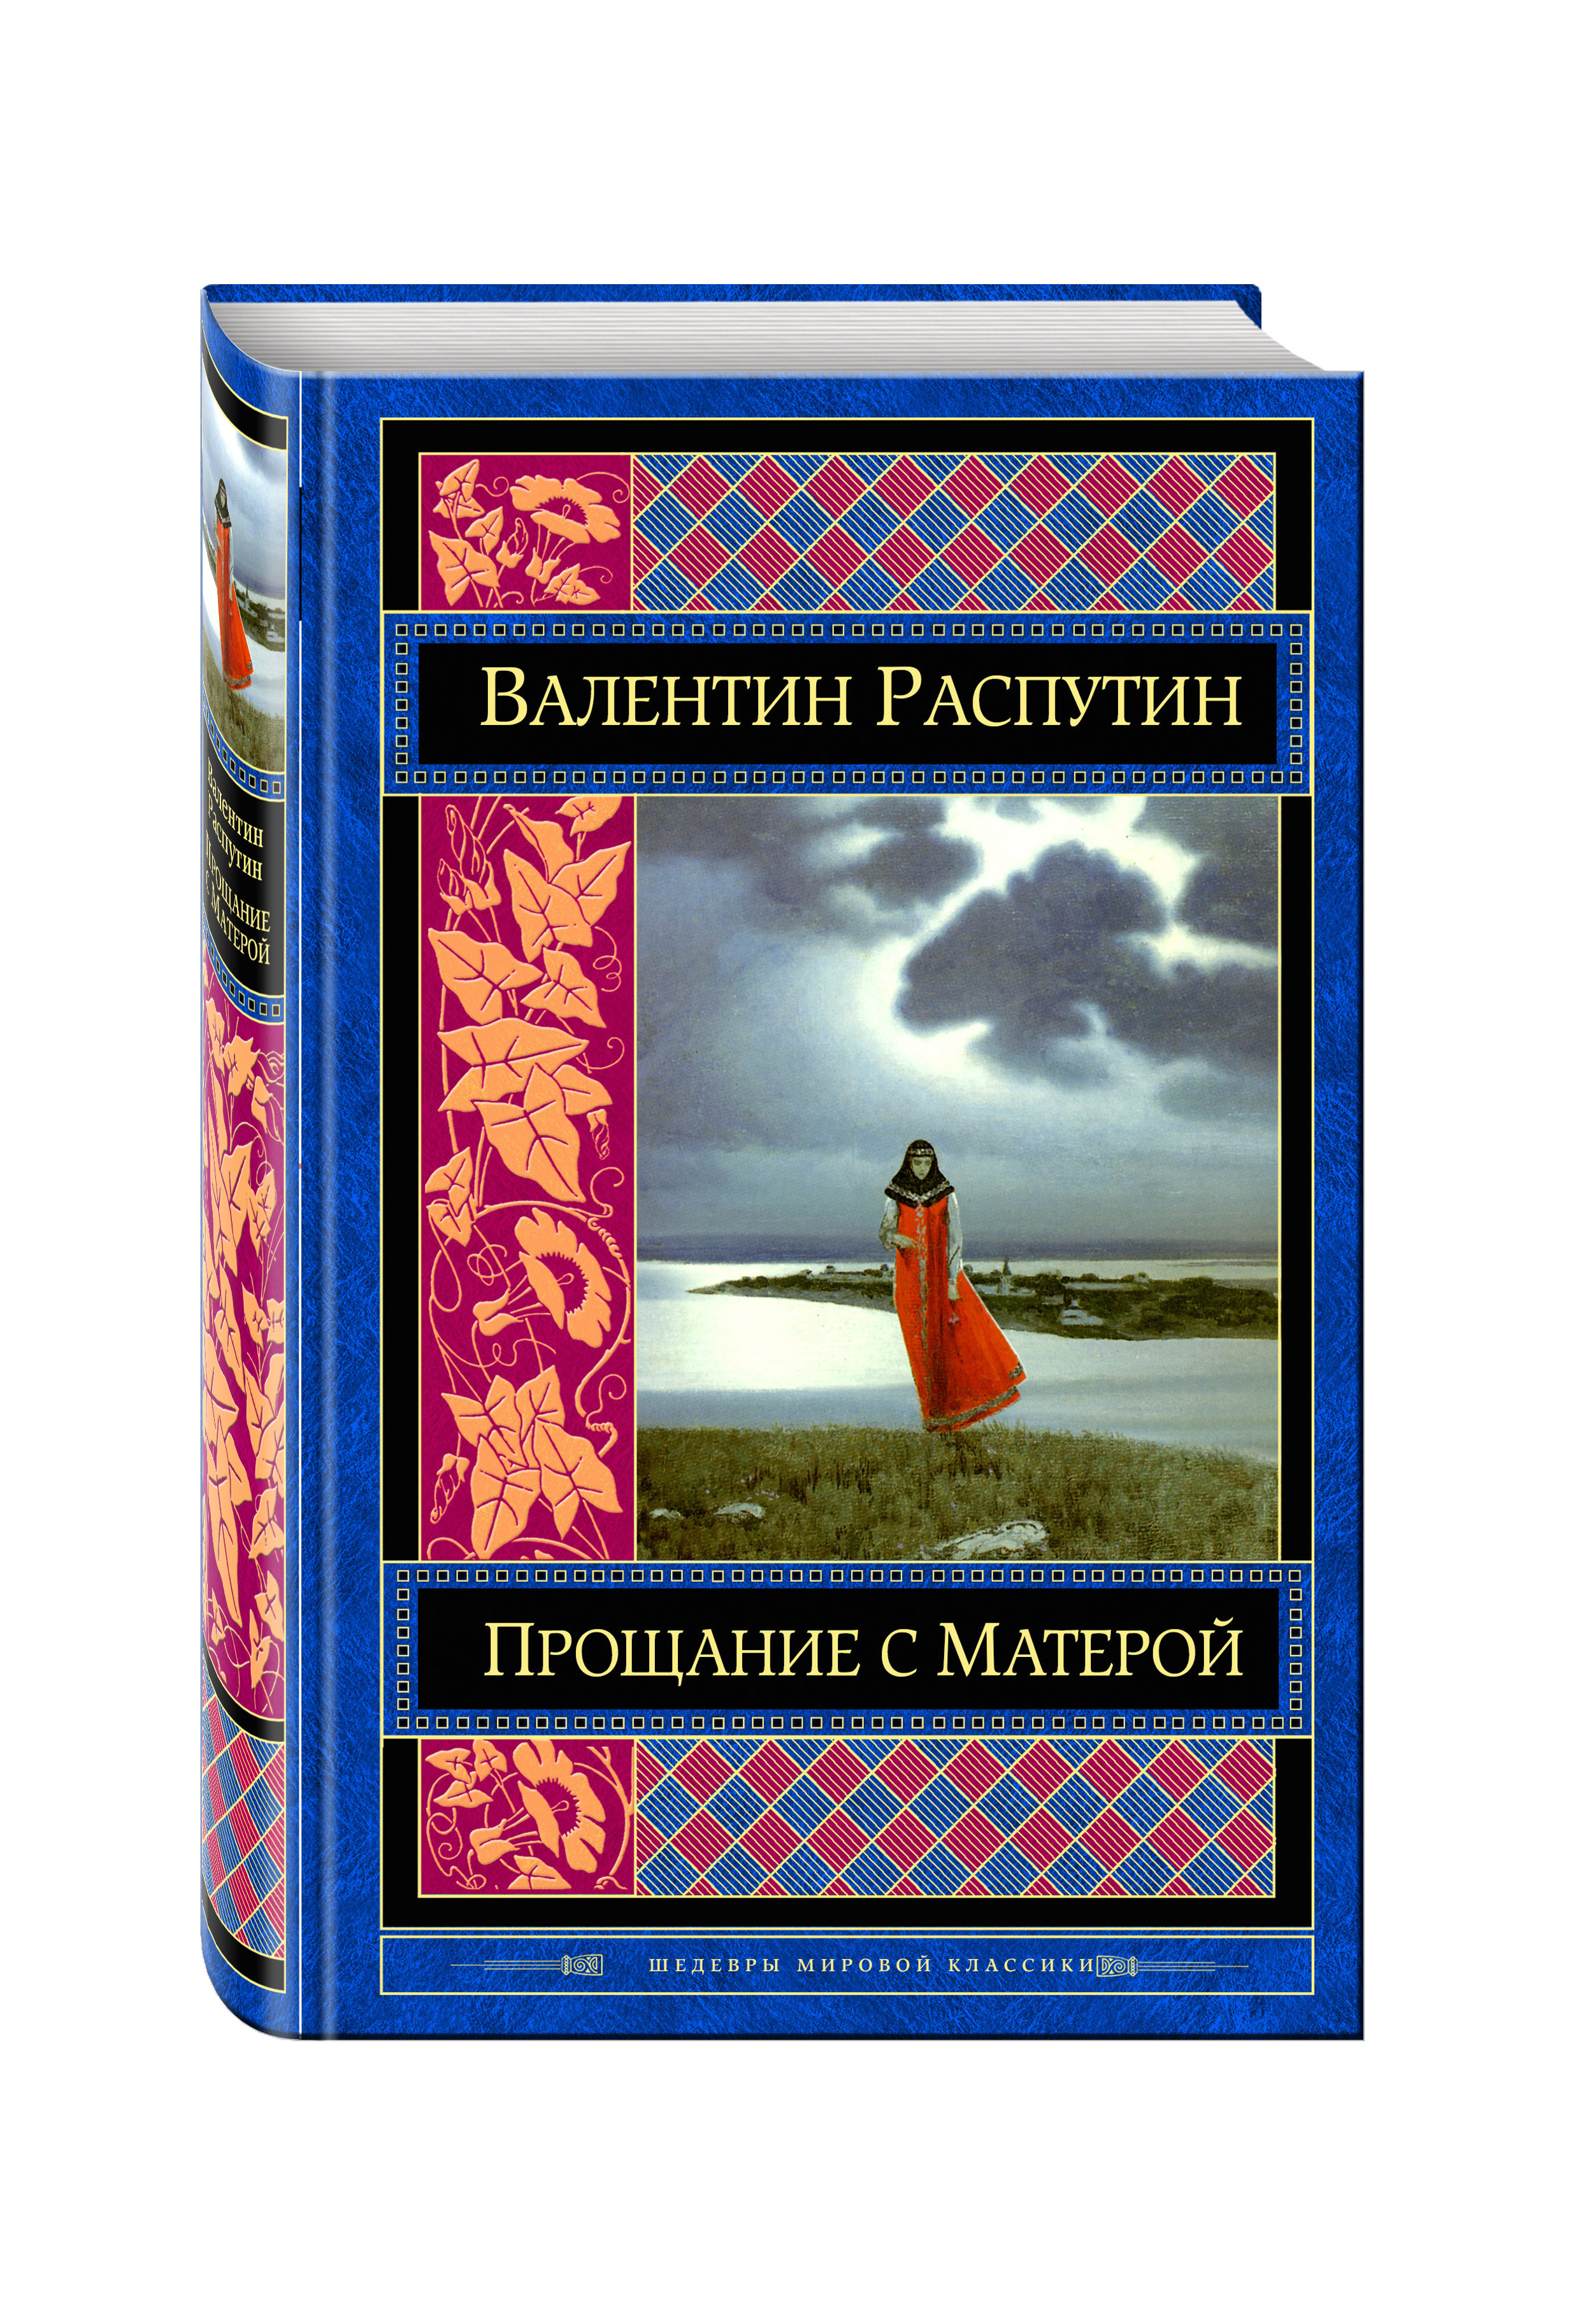 Прощание с матерой автор произведения. В. Г. Распутин «прощание с матёрой».